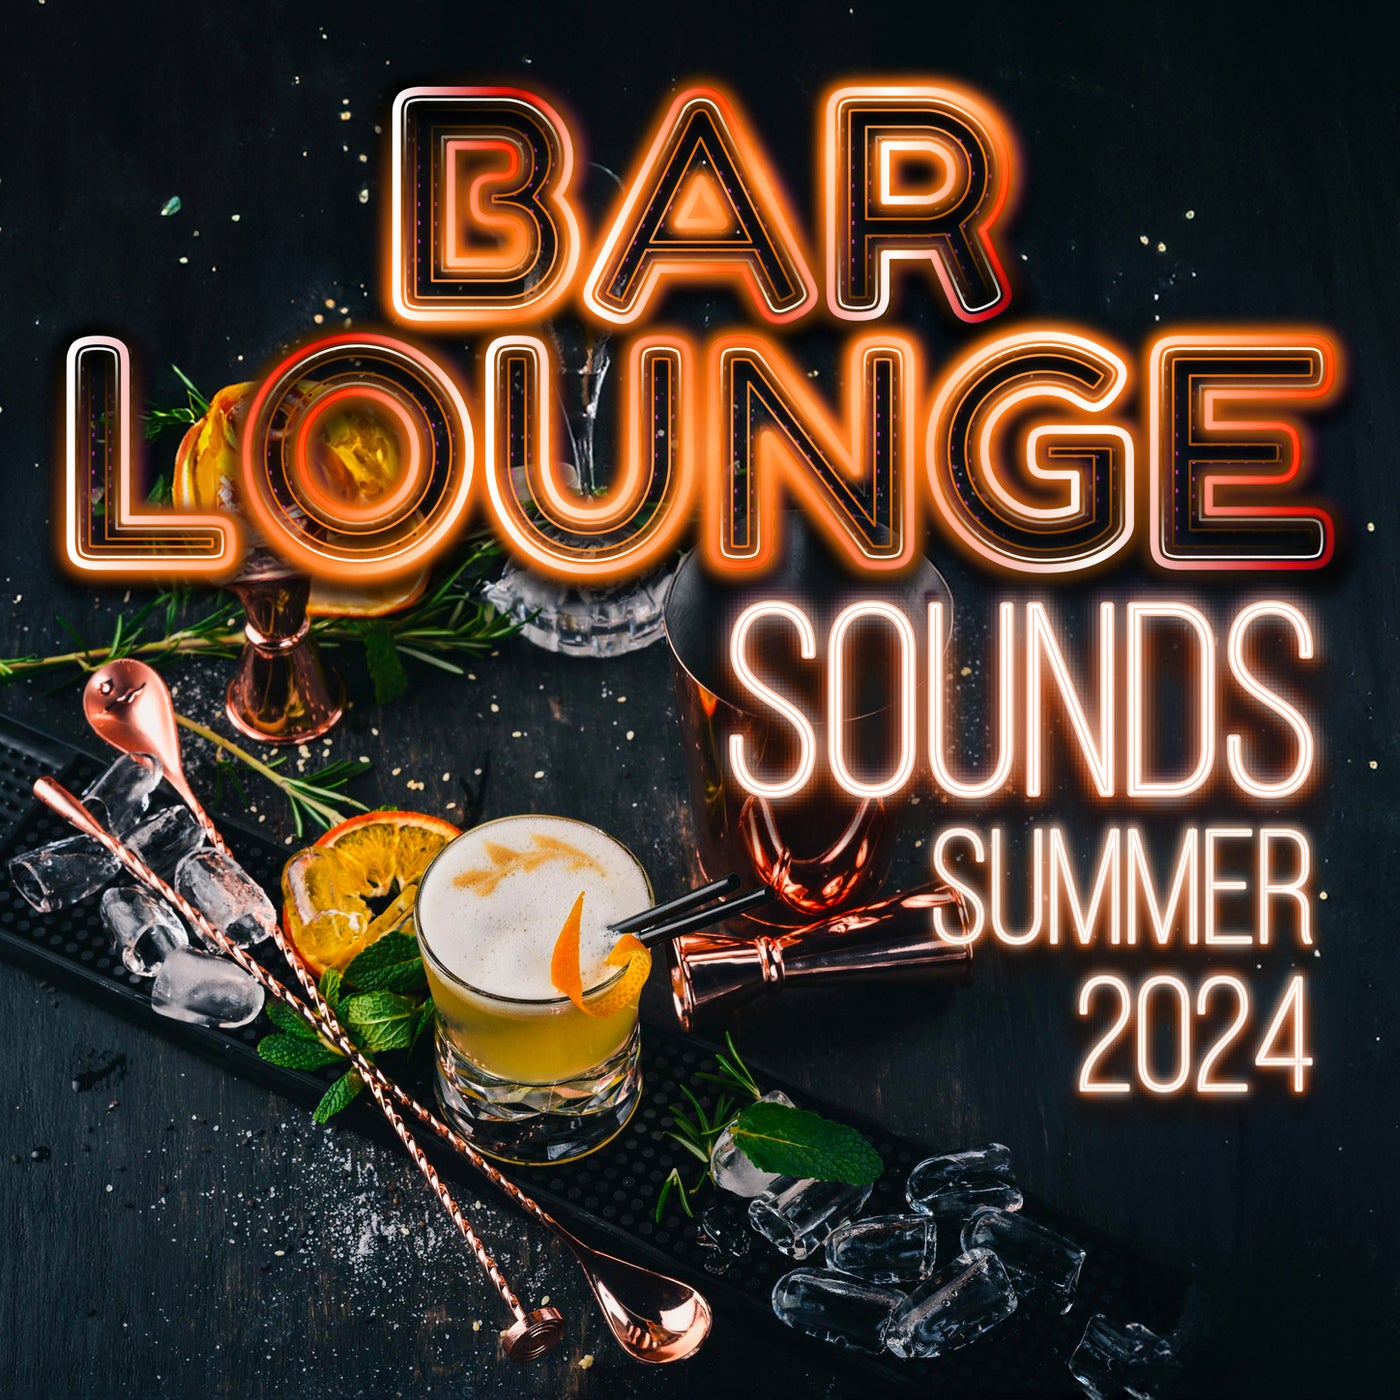 Bar Lounge Sounds - Summer 2024